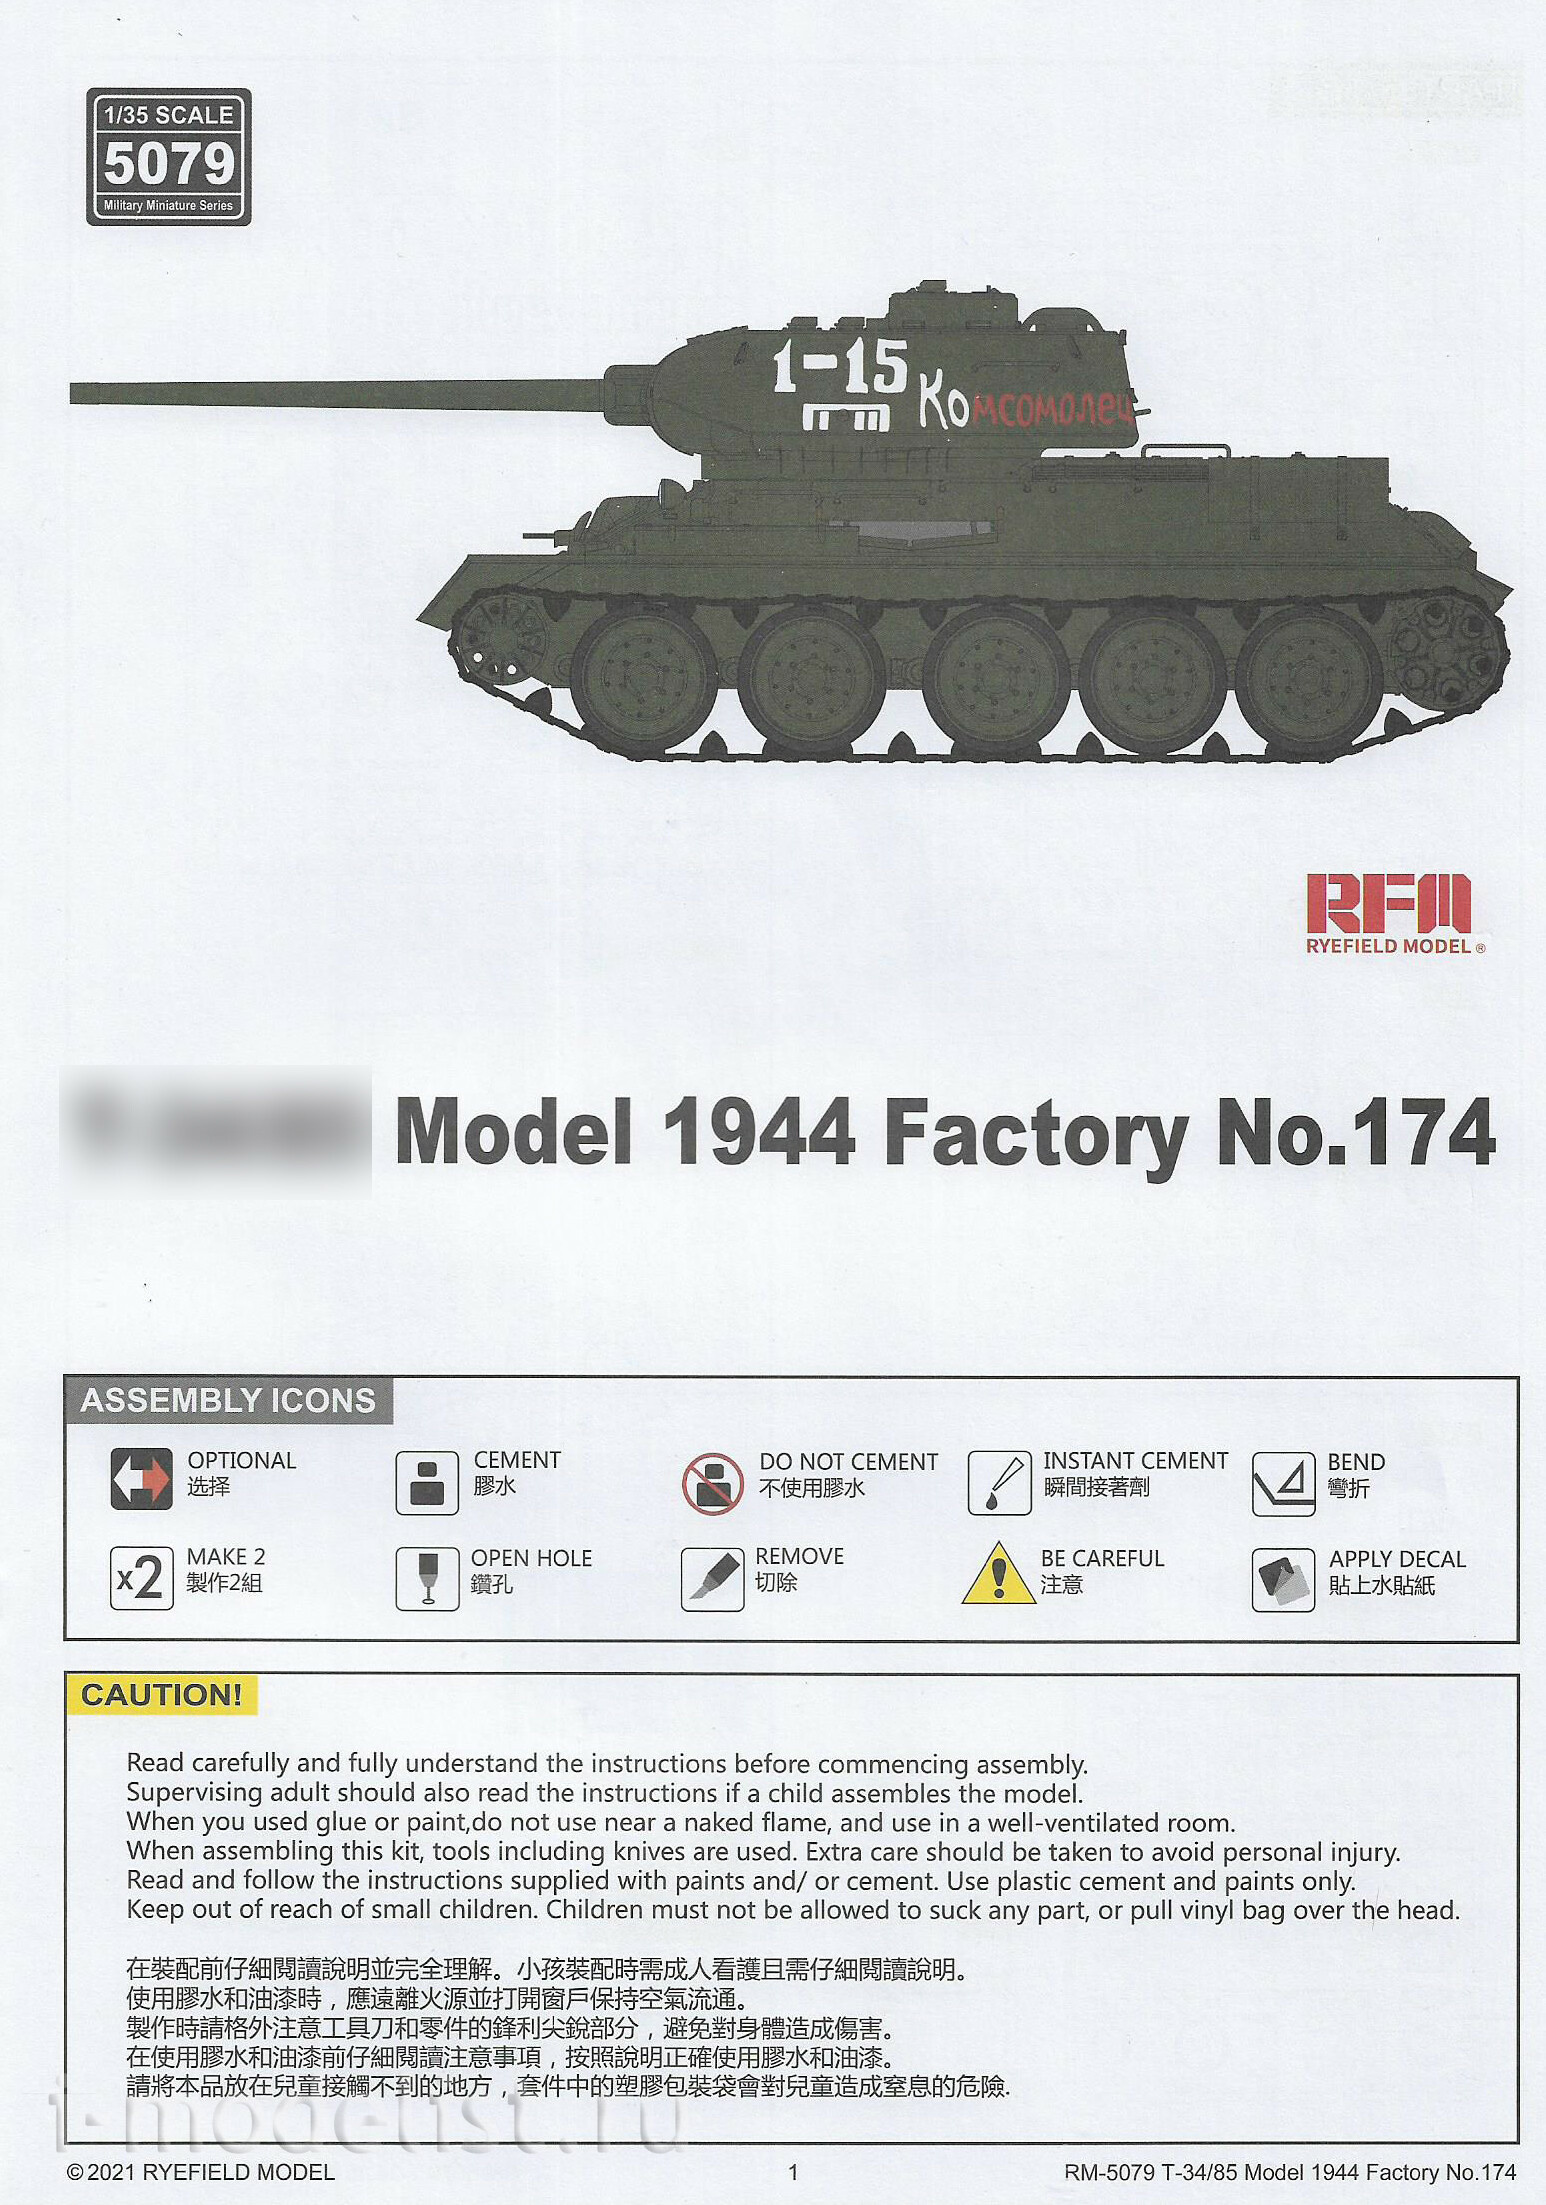 RM-5079 Rye Field Model 1/35 Танк тип 34/85, мод. 1944, завод No.174